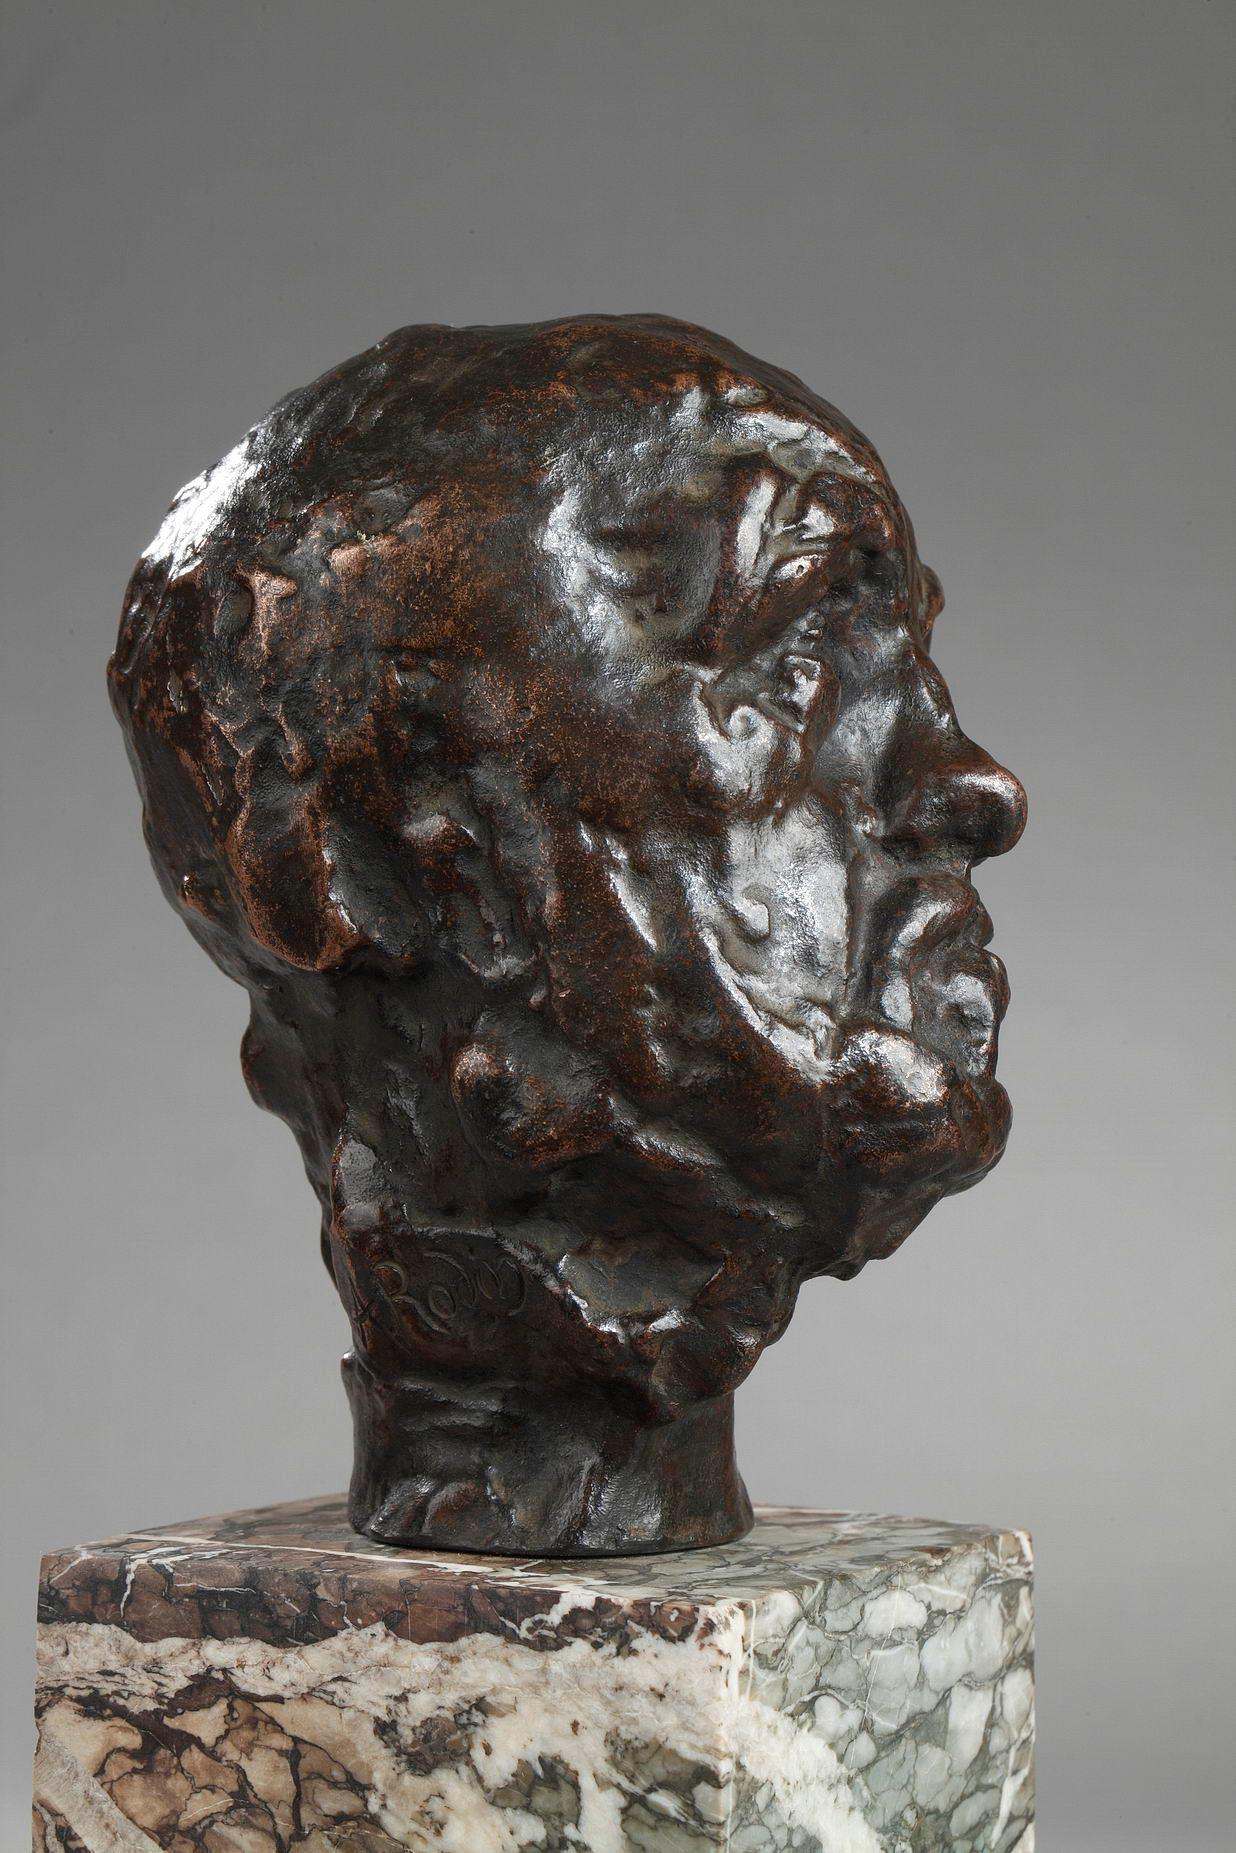 Petite tête de l'Homme au nez cassé - Or Figurative Sculpture par Auguste Rodin